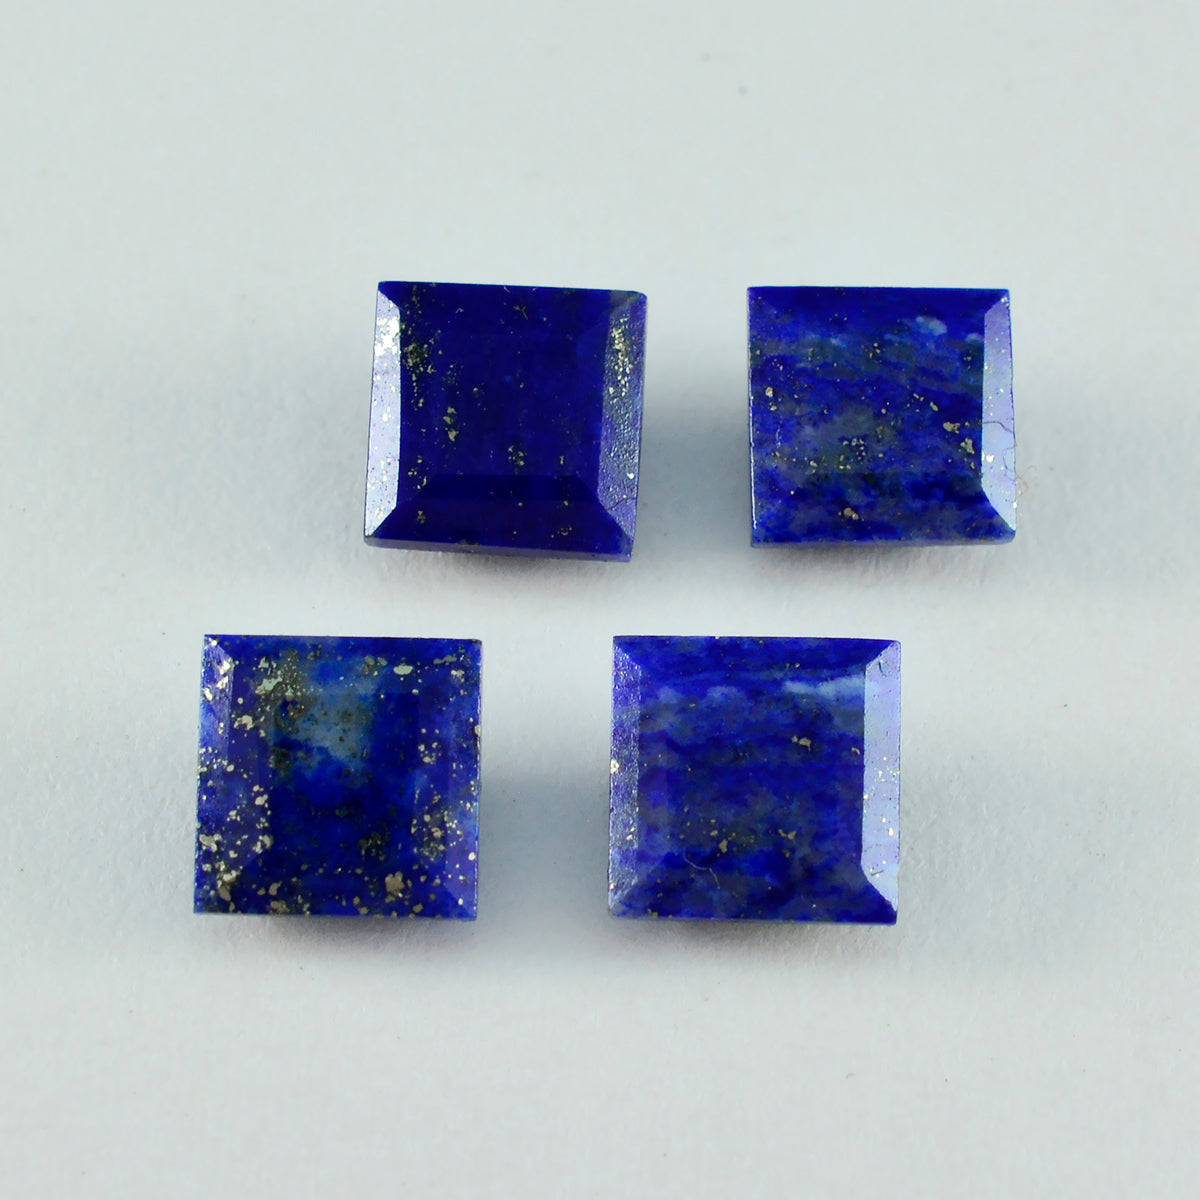 Riyogems, 1 pieza, lapislázuli azul real facetado, 9x9 mm, forma cuadrada, piedra preciosa de calidad asombrosa